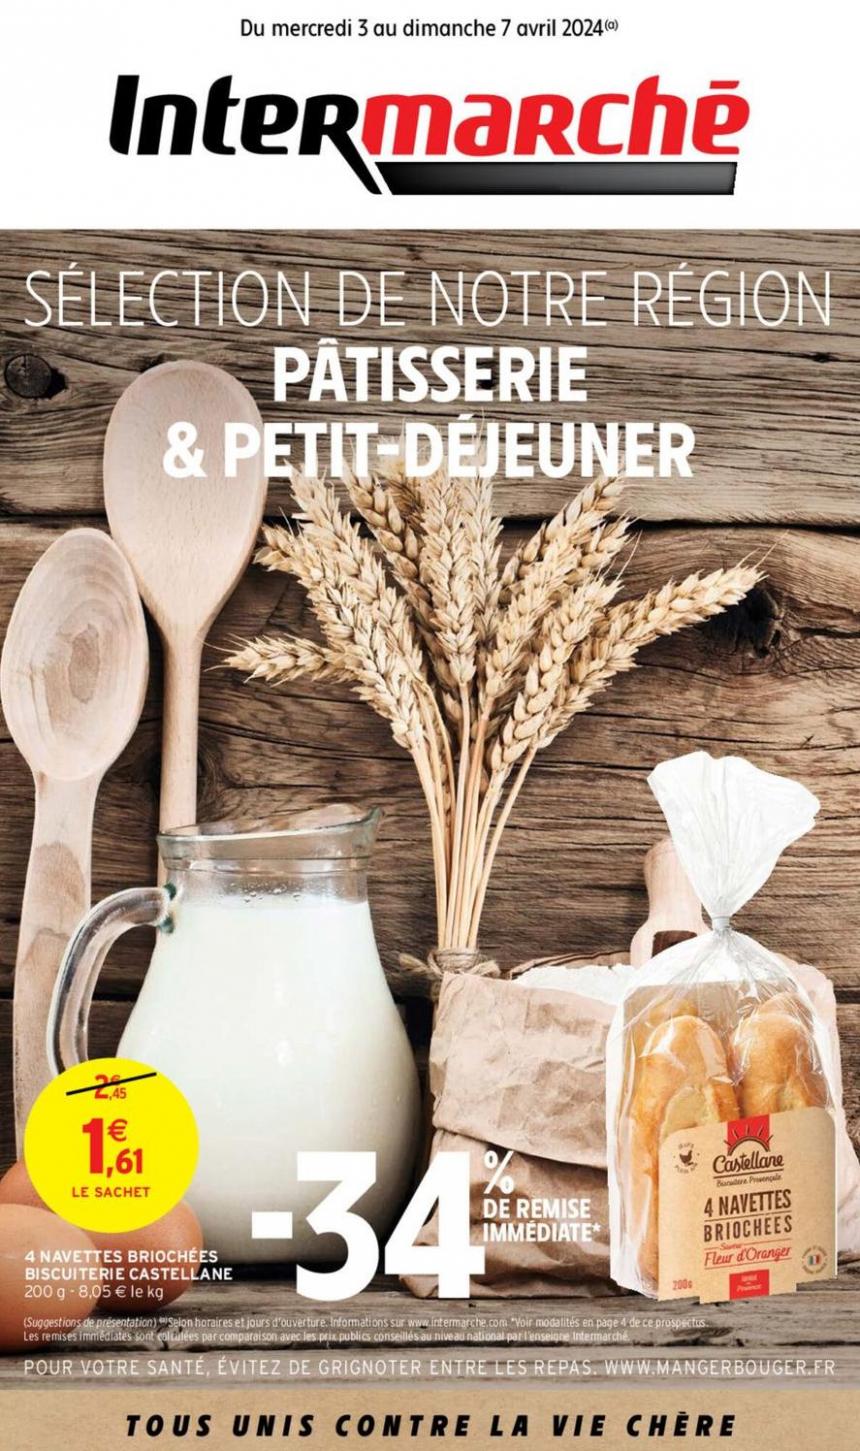 Sélection De Notre Région Patisserie & Petit-Dejeuner. Intermarché Express (2024-04-07-2024-04-07)